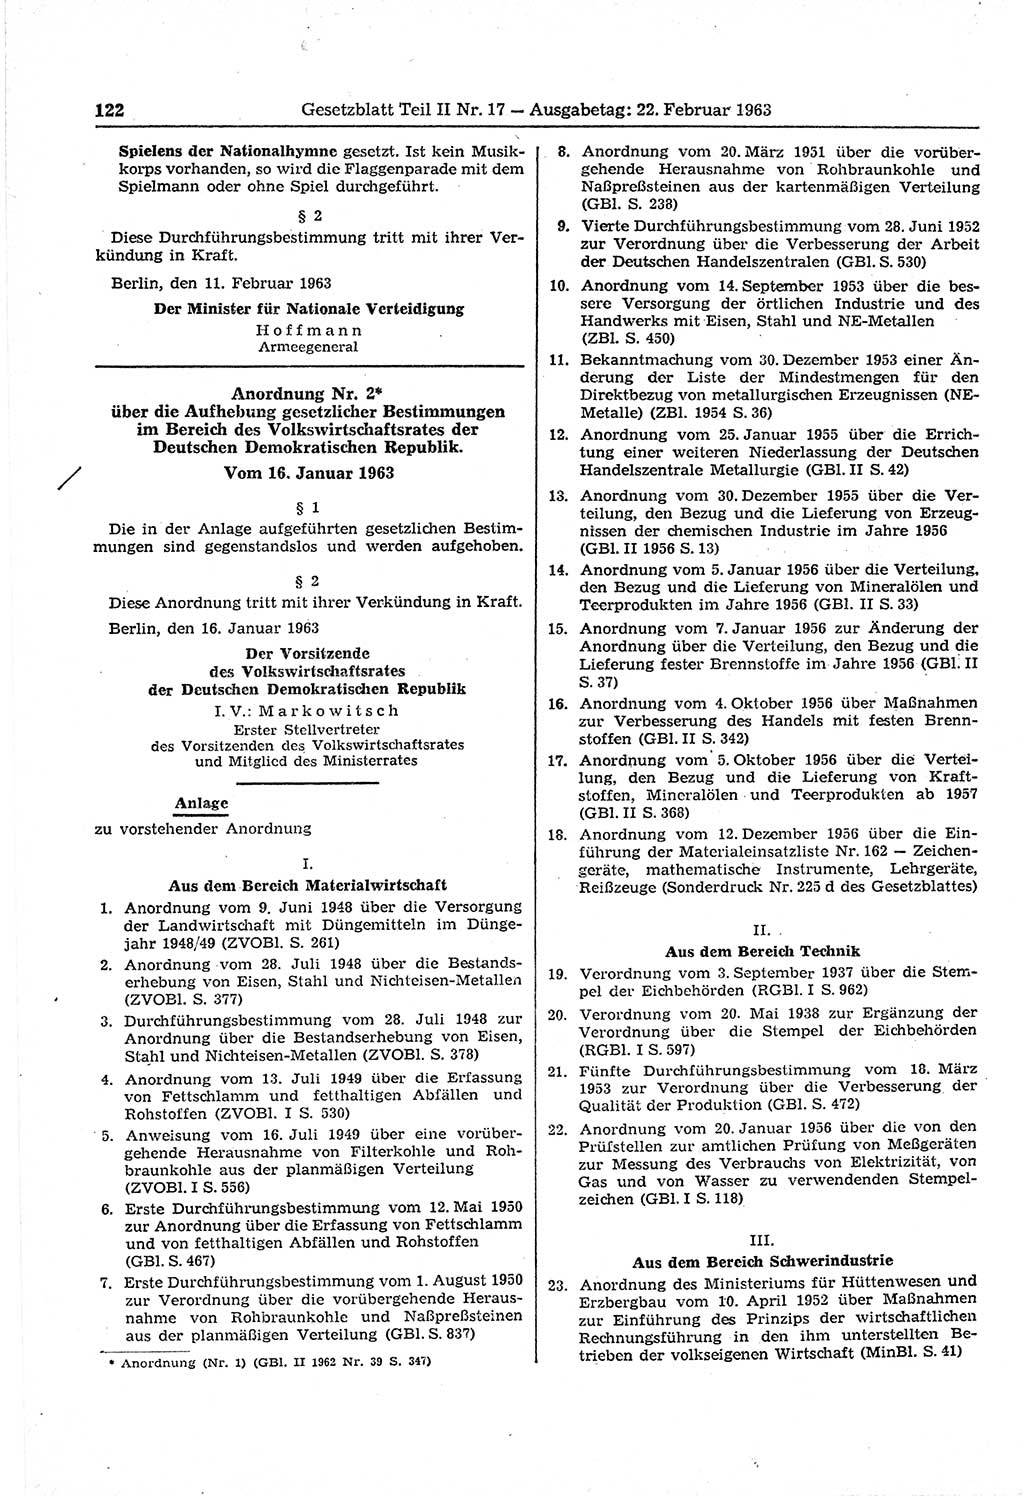 Gesetzblatt (GBl.) der Deutschen Demokratischen Republik (DDR) Teil ⅠⅠ 1963, Seite 122 (GBl. DDR ⅠⅠ 1963, S. 122)